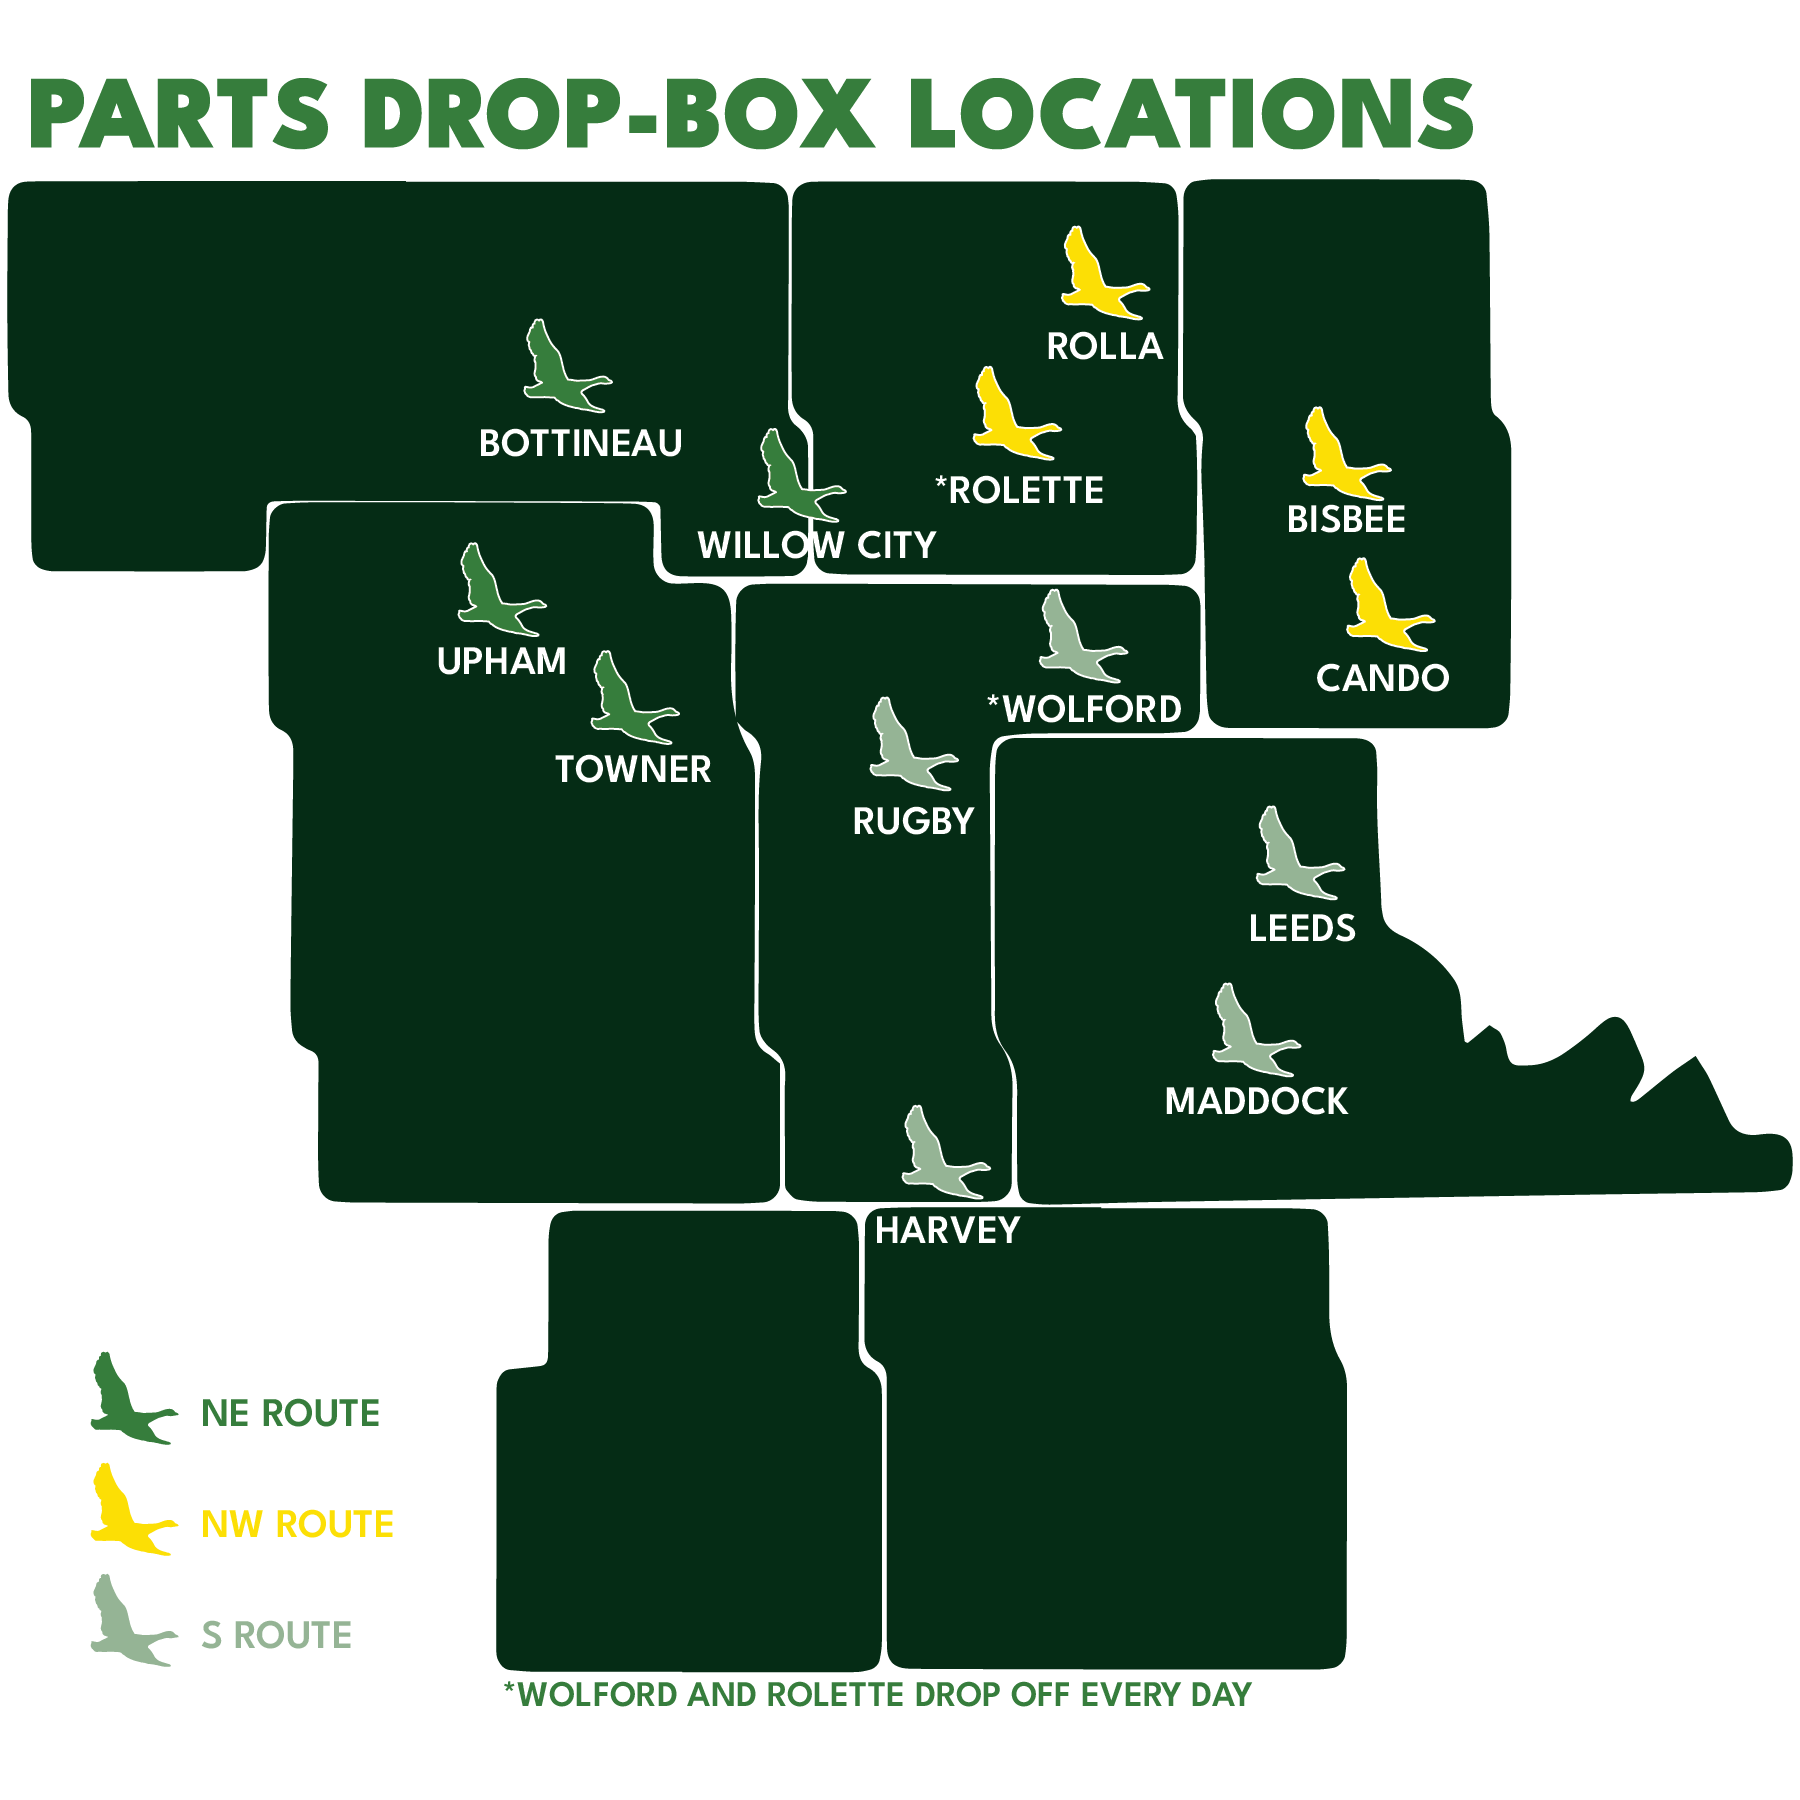 Parts Drop-Box Locations